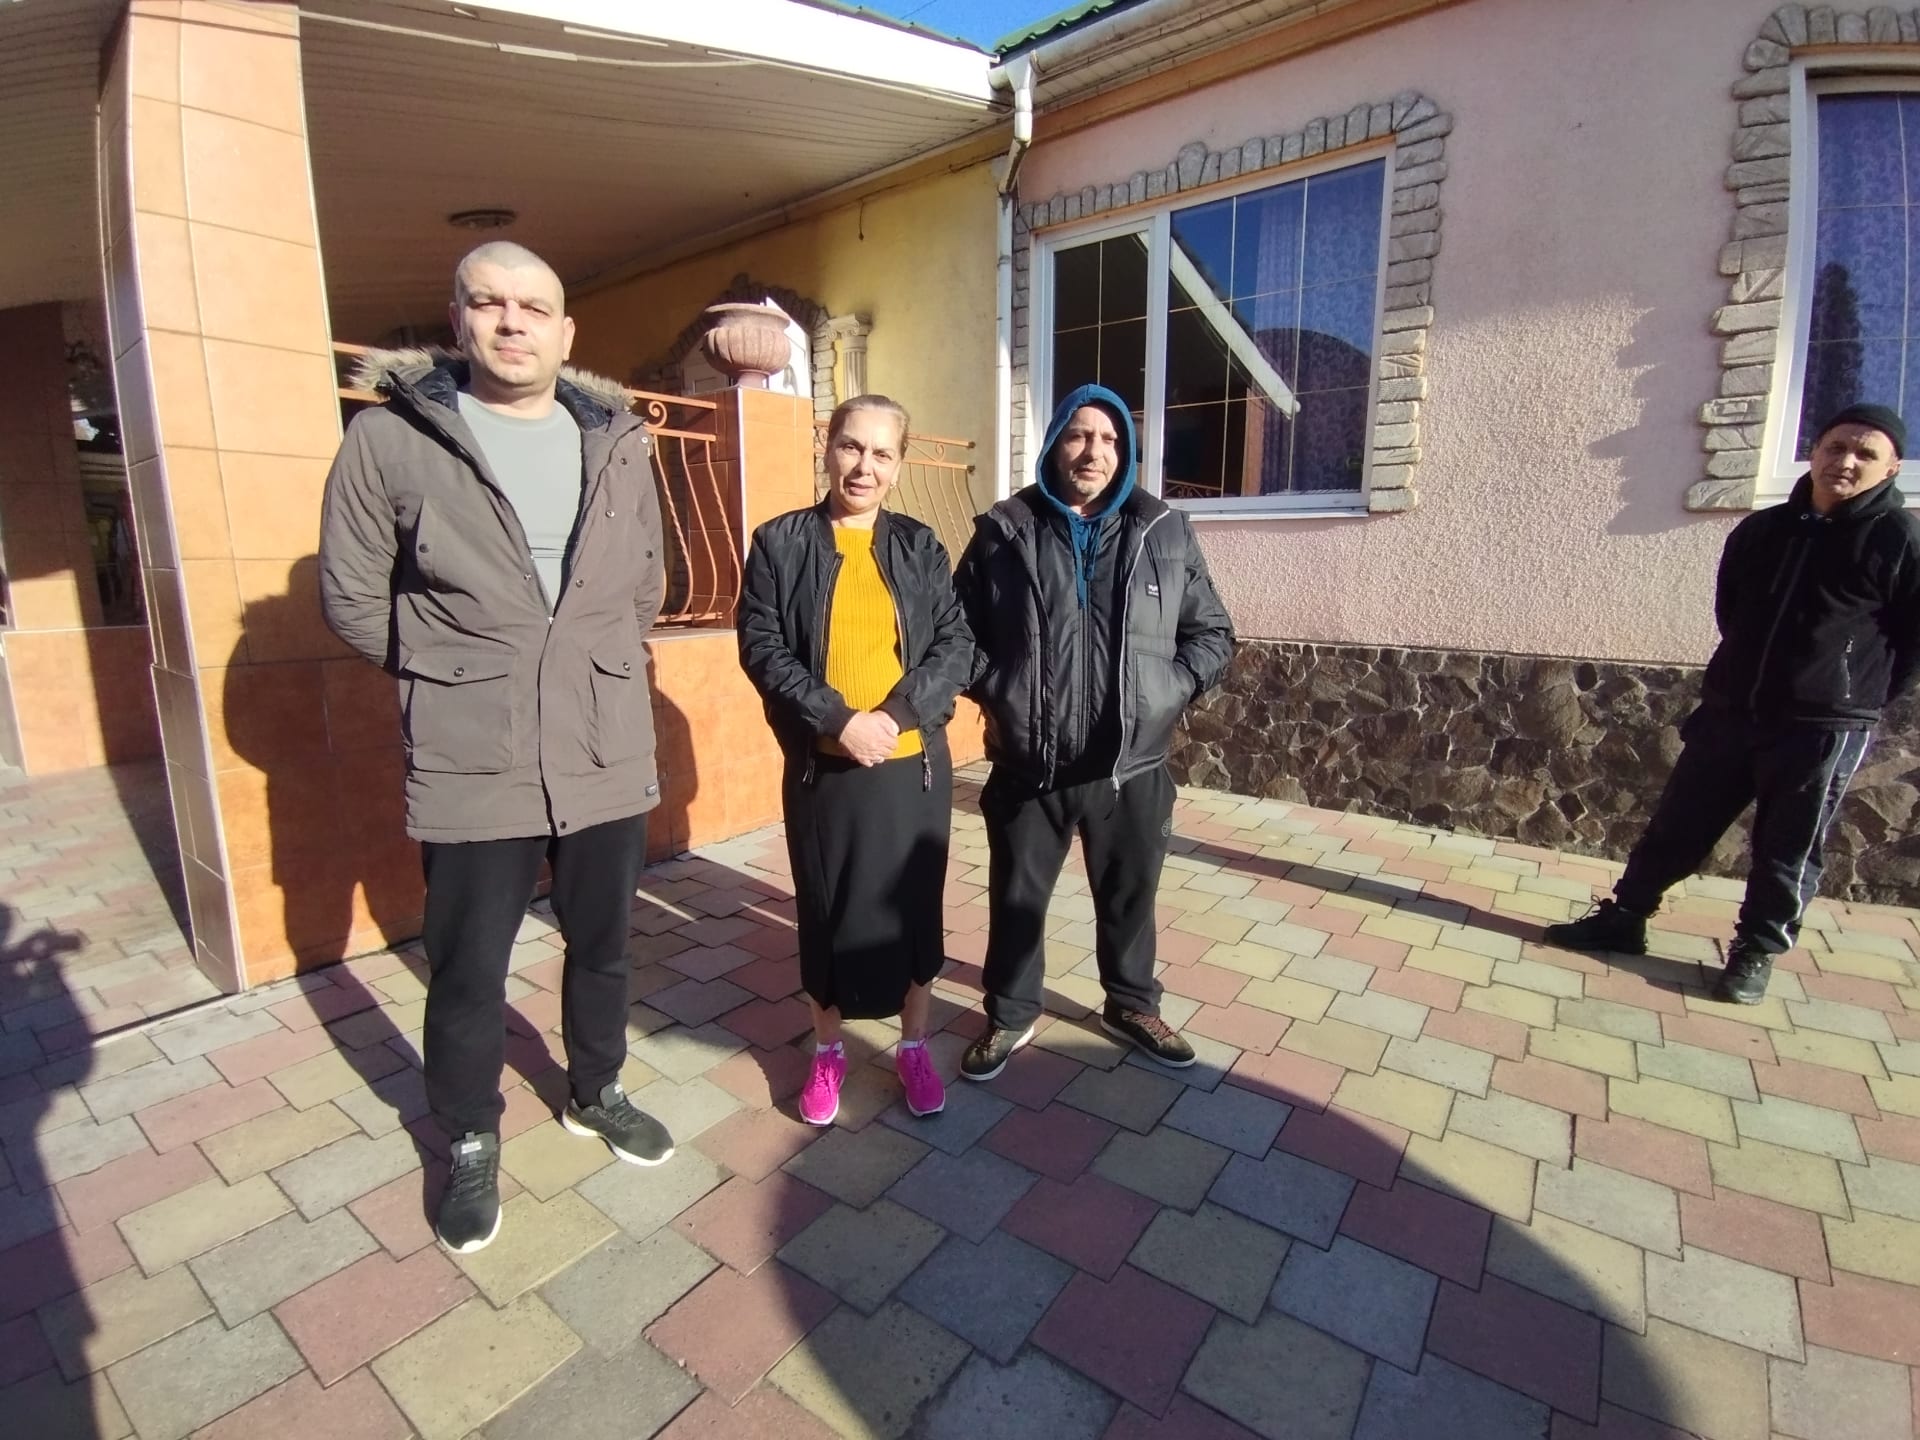 Uprchlíci z Donbasu v zařízení Blaho v Užhorodě. Věra Alexandrovna Petrovič z ostřelovaného Slovjanska, Jura Nikolajenko z totálně rozštříleného Vuhledardu u Doněcka a Griša Udavičenka z Luhanské oblasti.